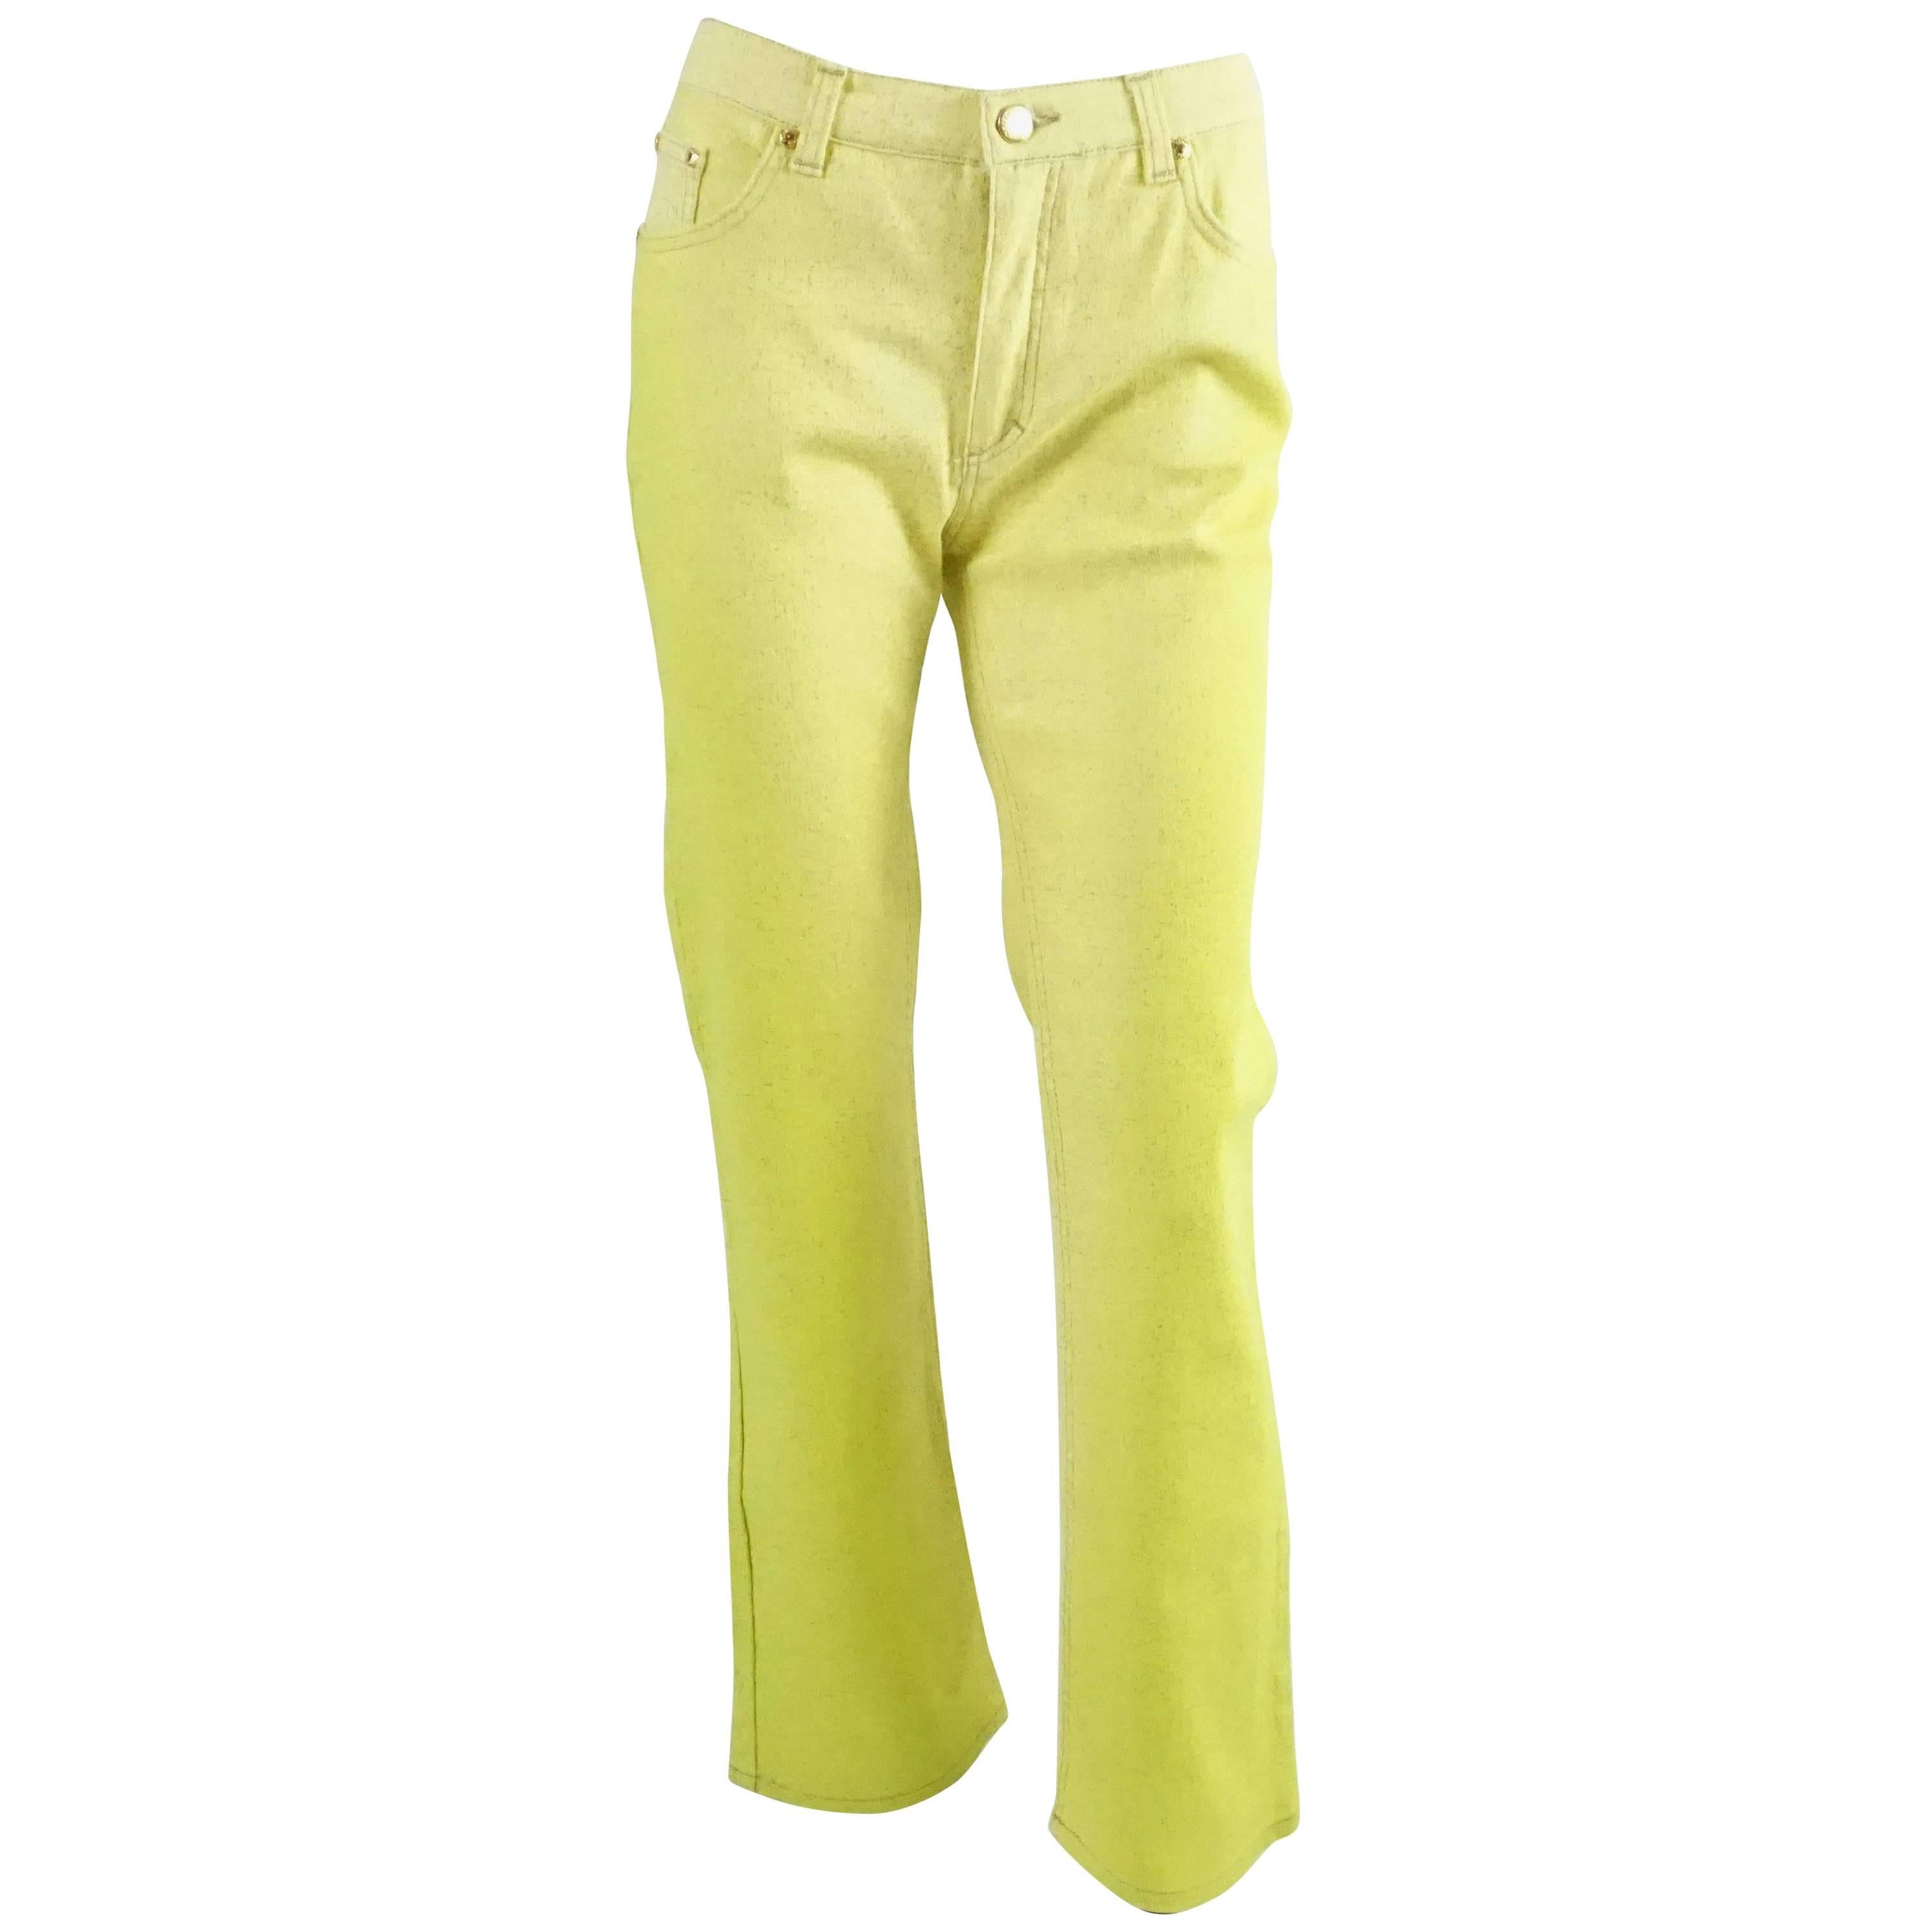 Roberto Cavalli 1990er Jahre Jeans mit hoher Taille und gelbem Glitterstiefelschliff - Größe Medium